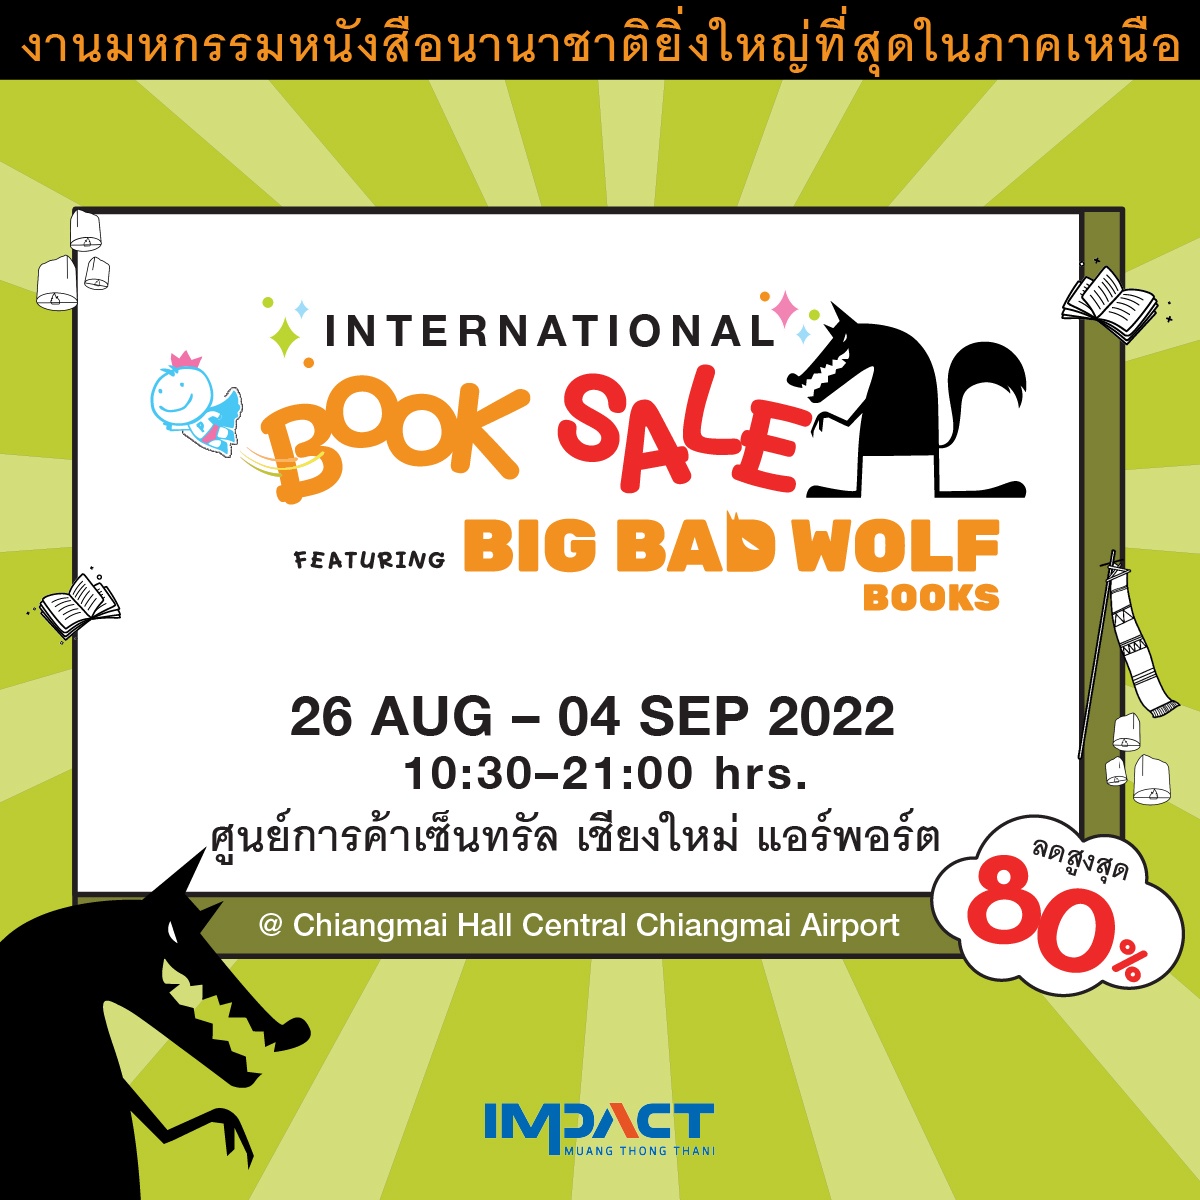 อิมแพ็ค ร่วมกับ บิ๊ก แบ๊ด วูฟ ผนึกกำลังพันธมิตรธุรกิจ จัดงานมหกรรมหนังสือยิ่งใหญ่ที่สุดในล้านนา International Book Sale featuring Big Bad Wolf